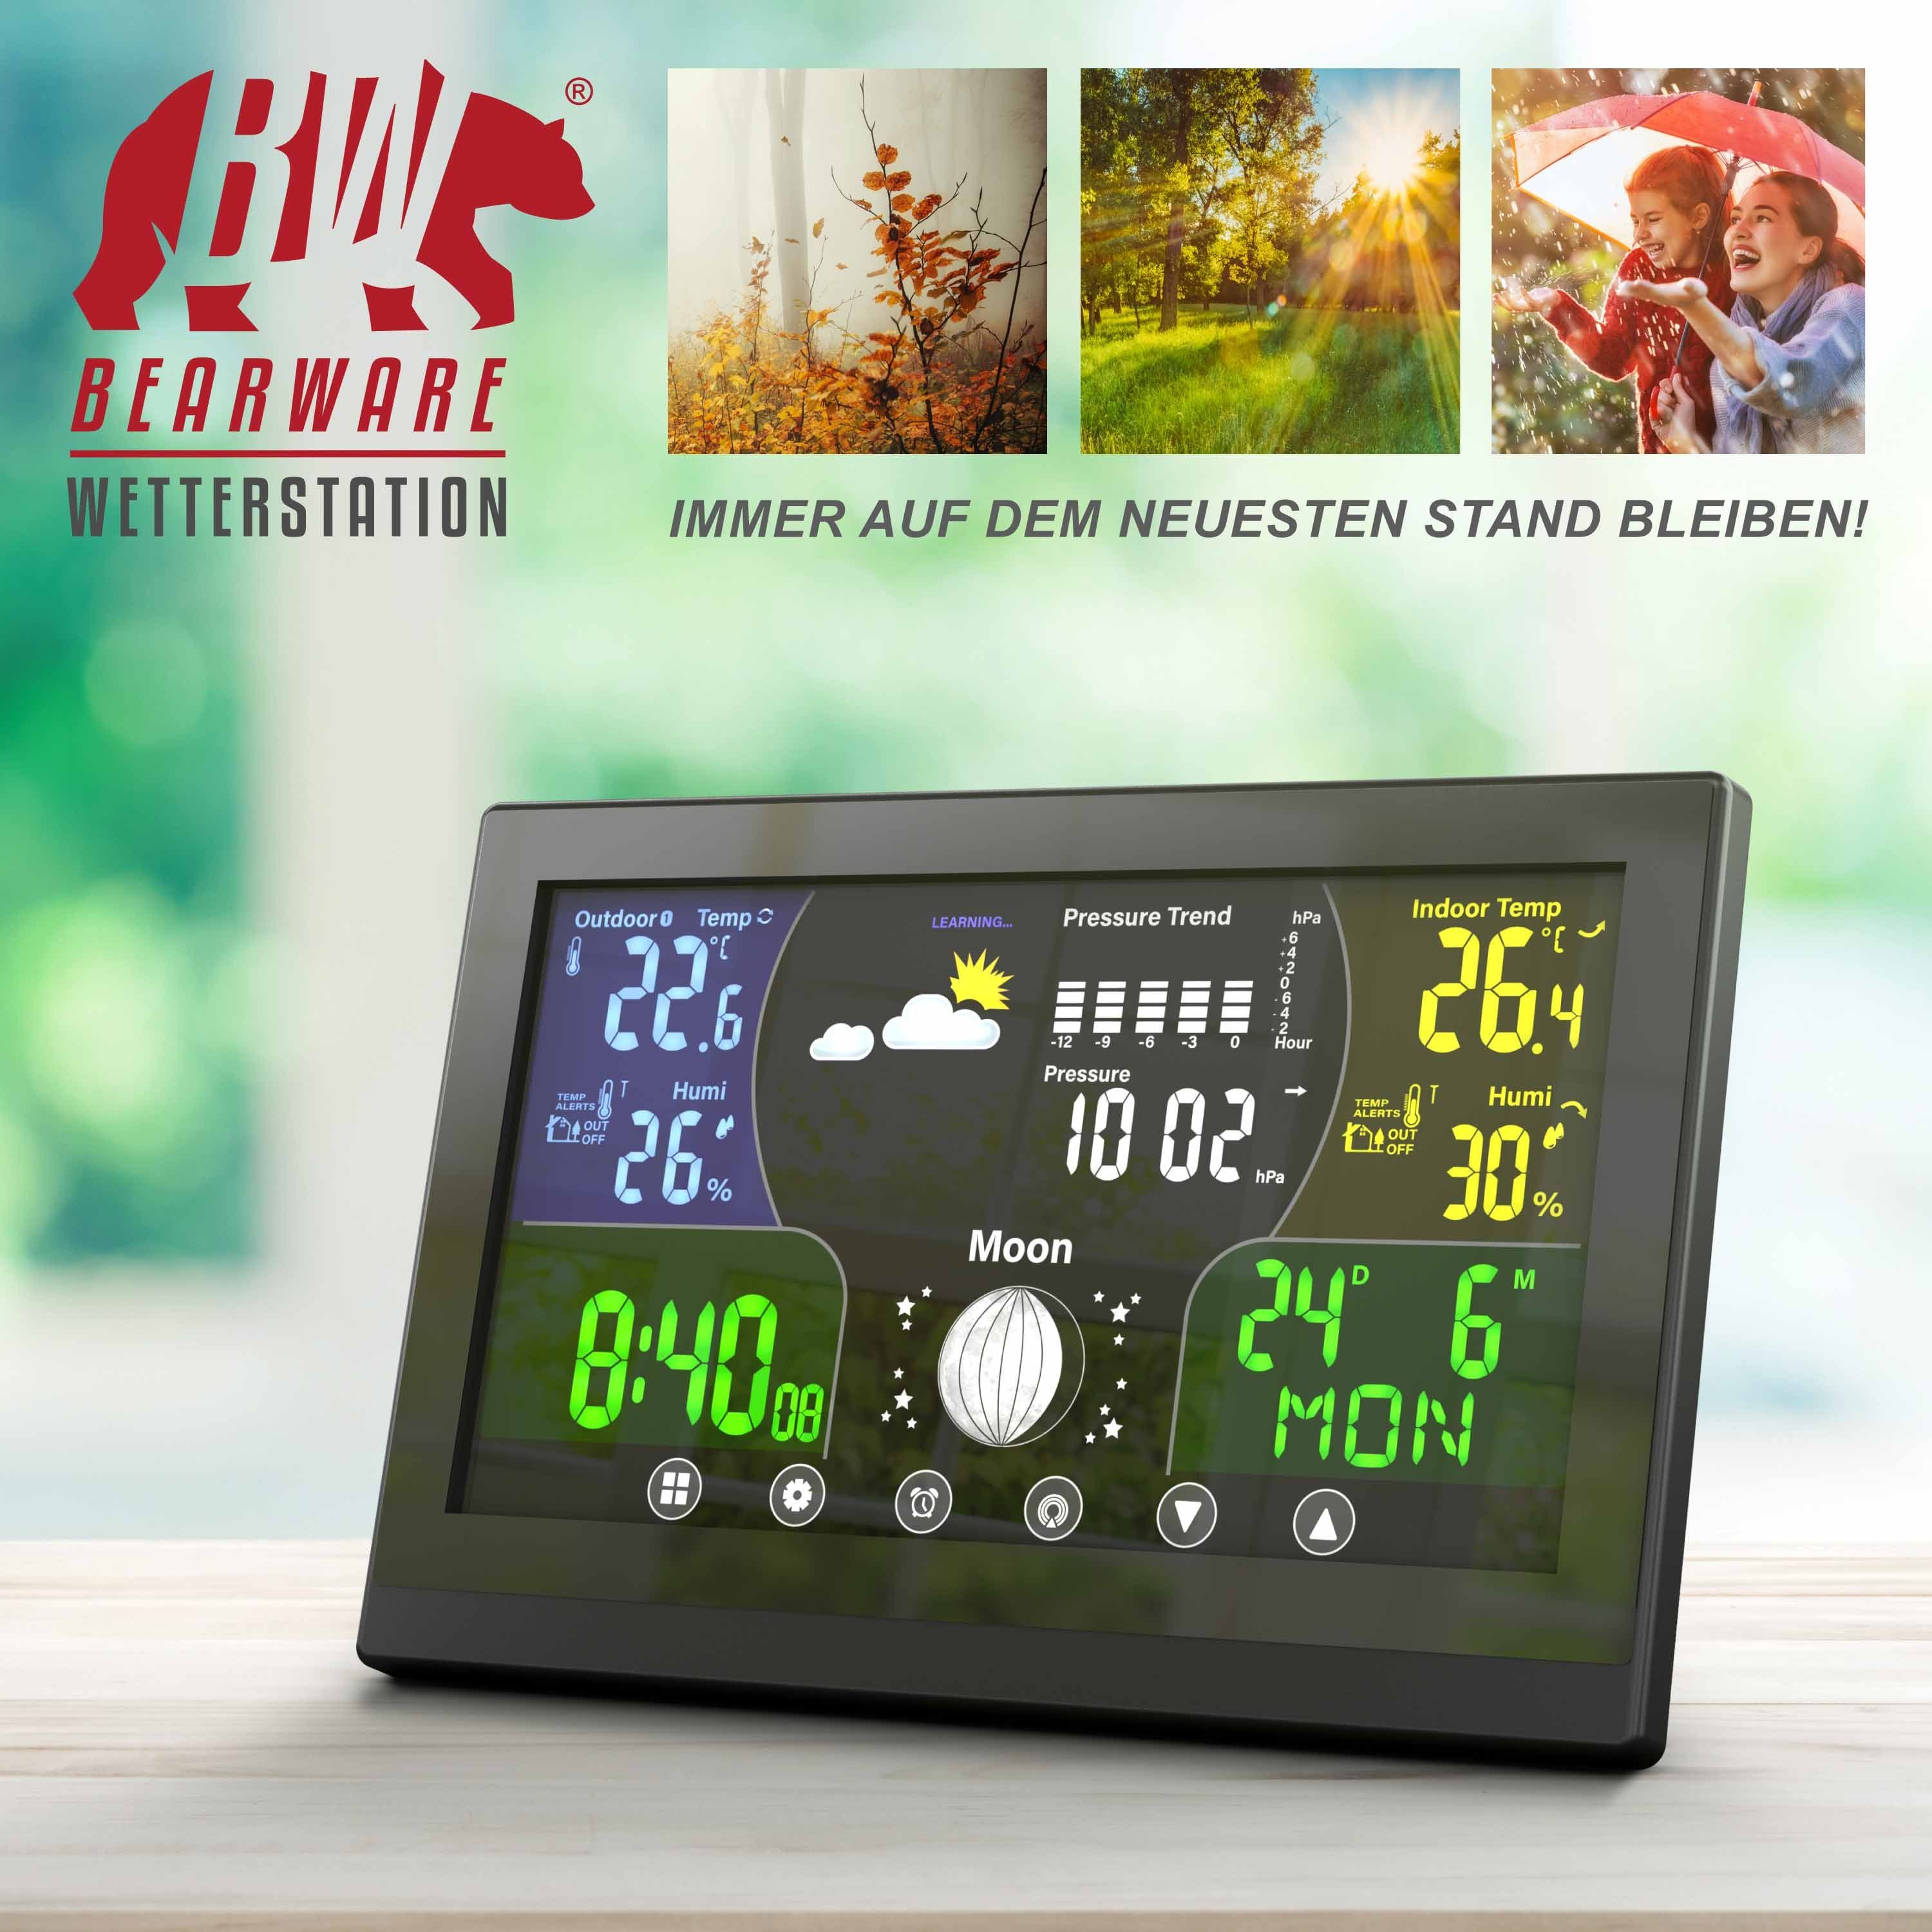 mit Farbdisplay Höhenkorrektur) LCD Luftdruck BEARWARE / Wetterstation mit Außensensor, (mit